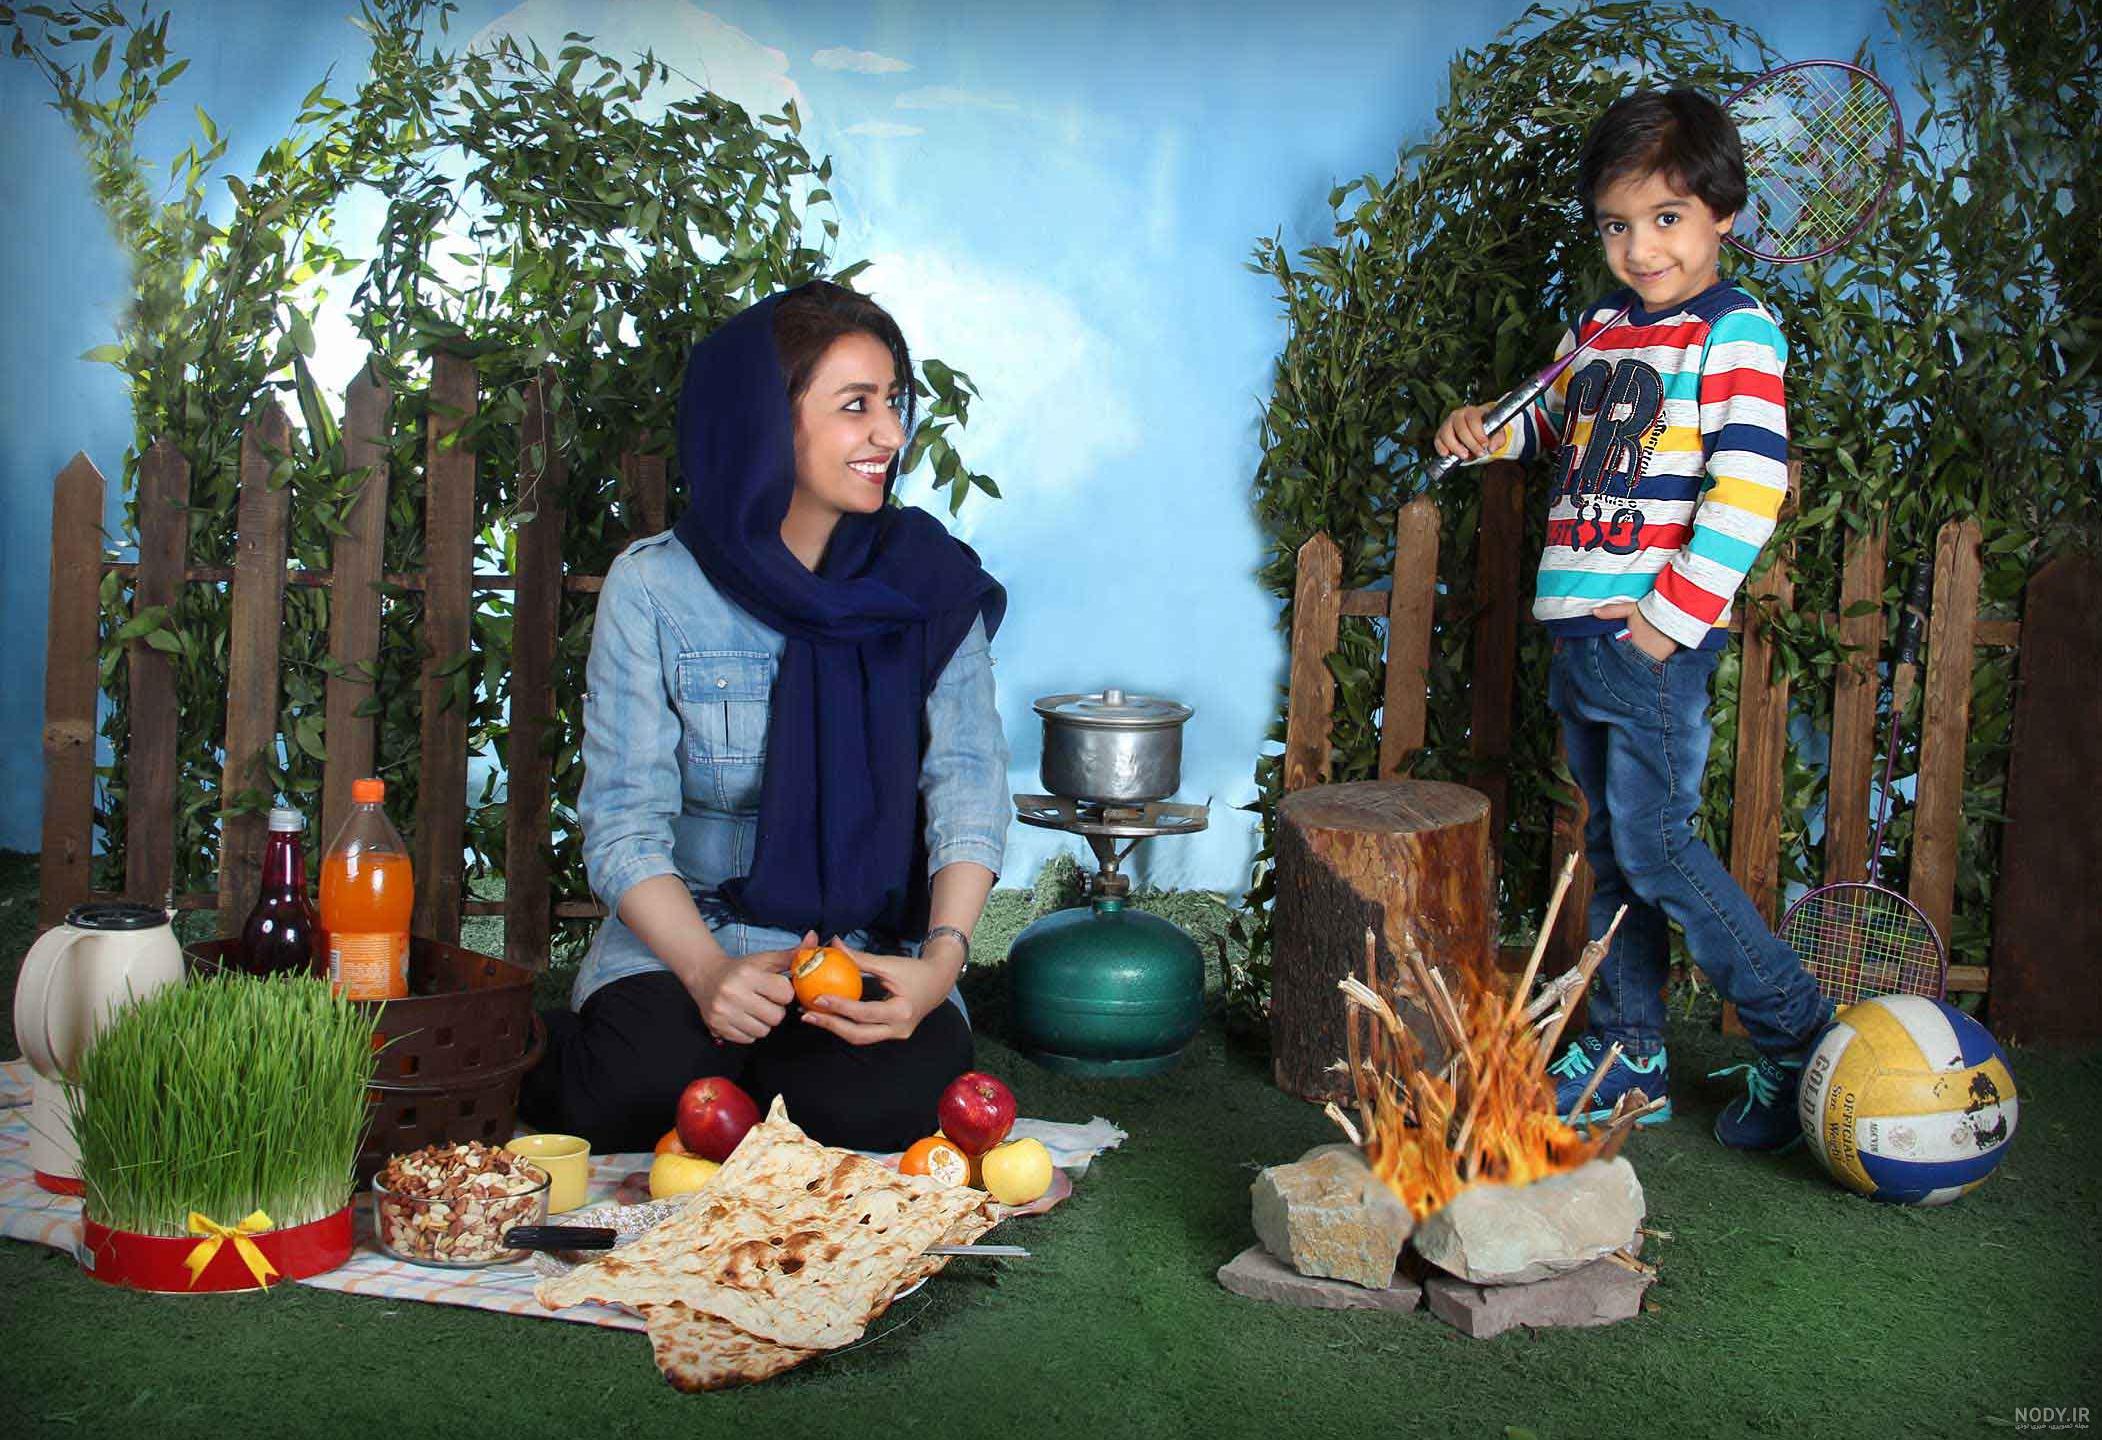 نمونه عکسهای آتلیه کودک و خانوادگی الیزه با دکور عید نوروز ...